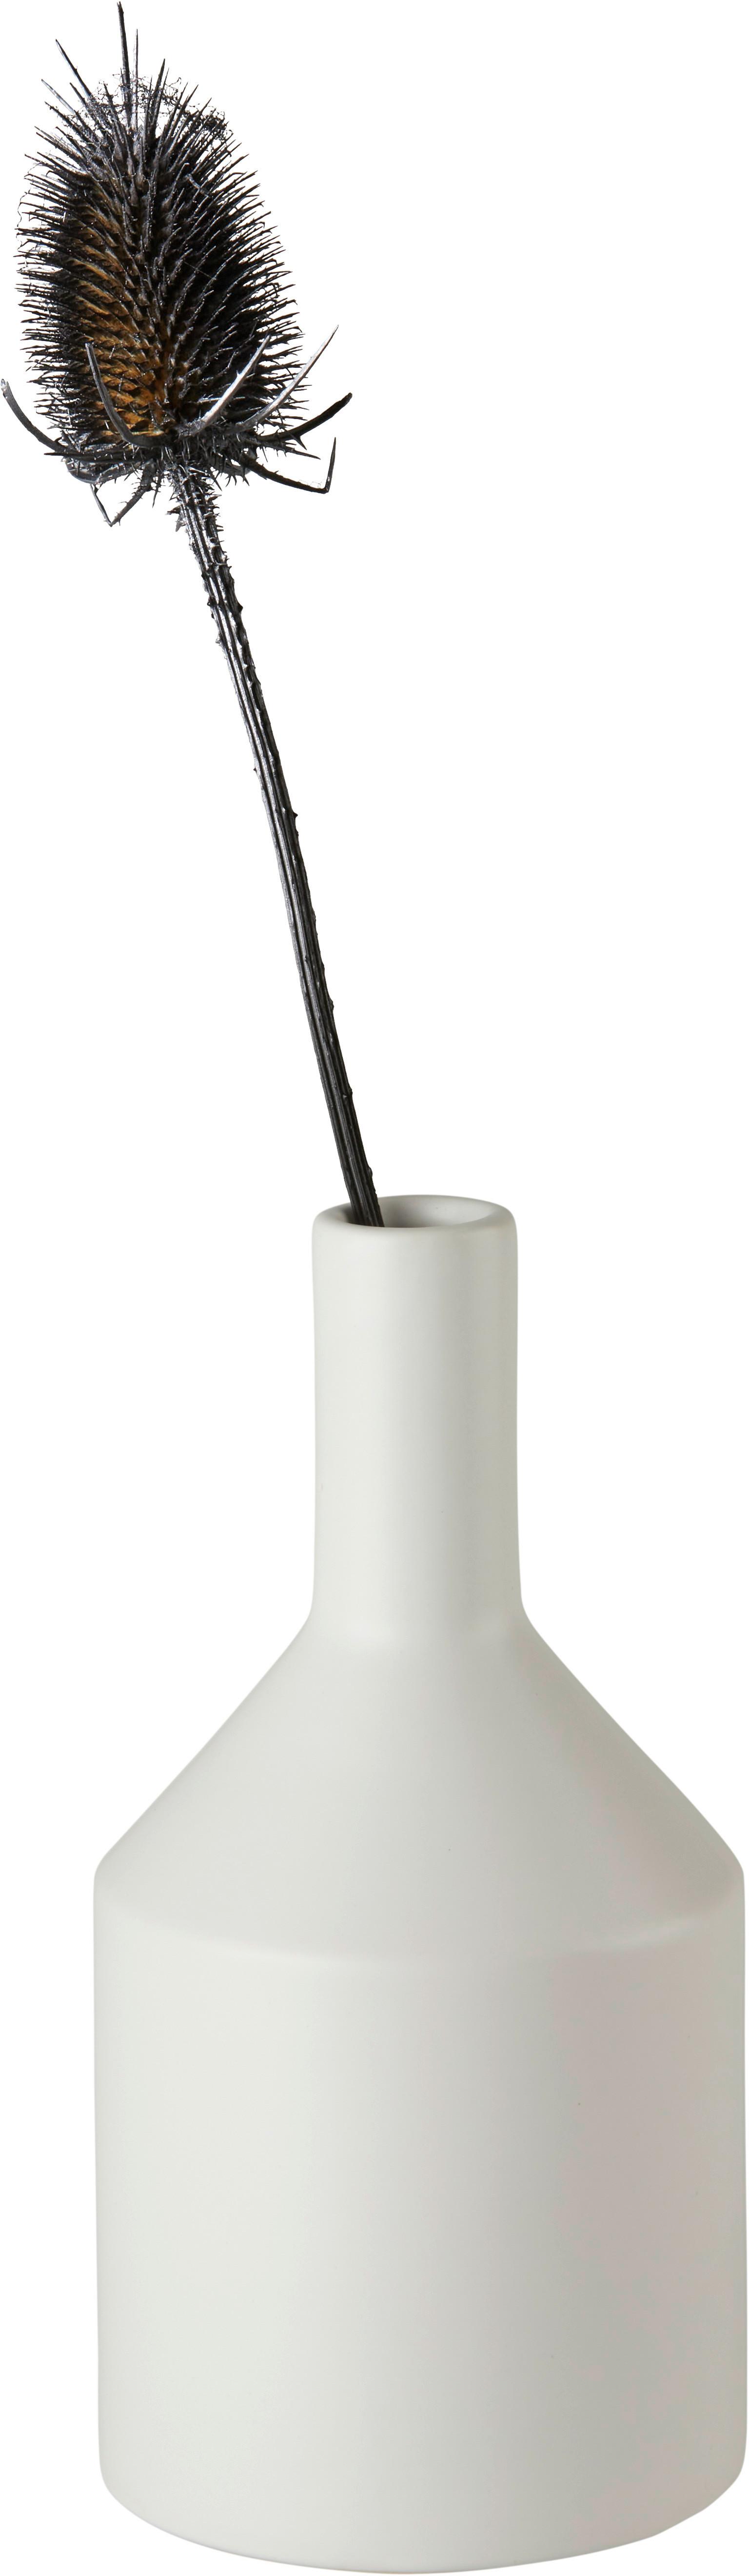 Vase Isabella in Weiß - Weiß, Basics, Keramik (10/20/10cm) - Modern Living